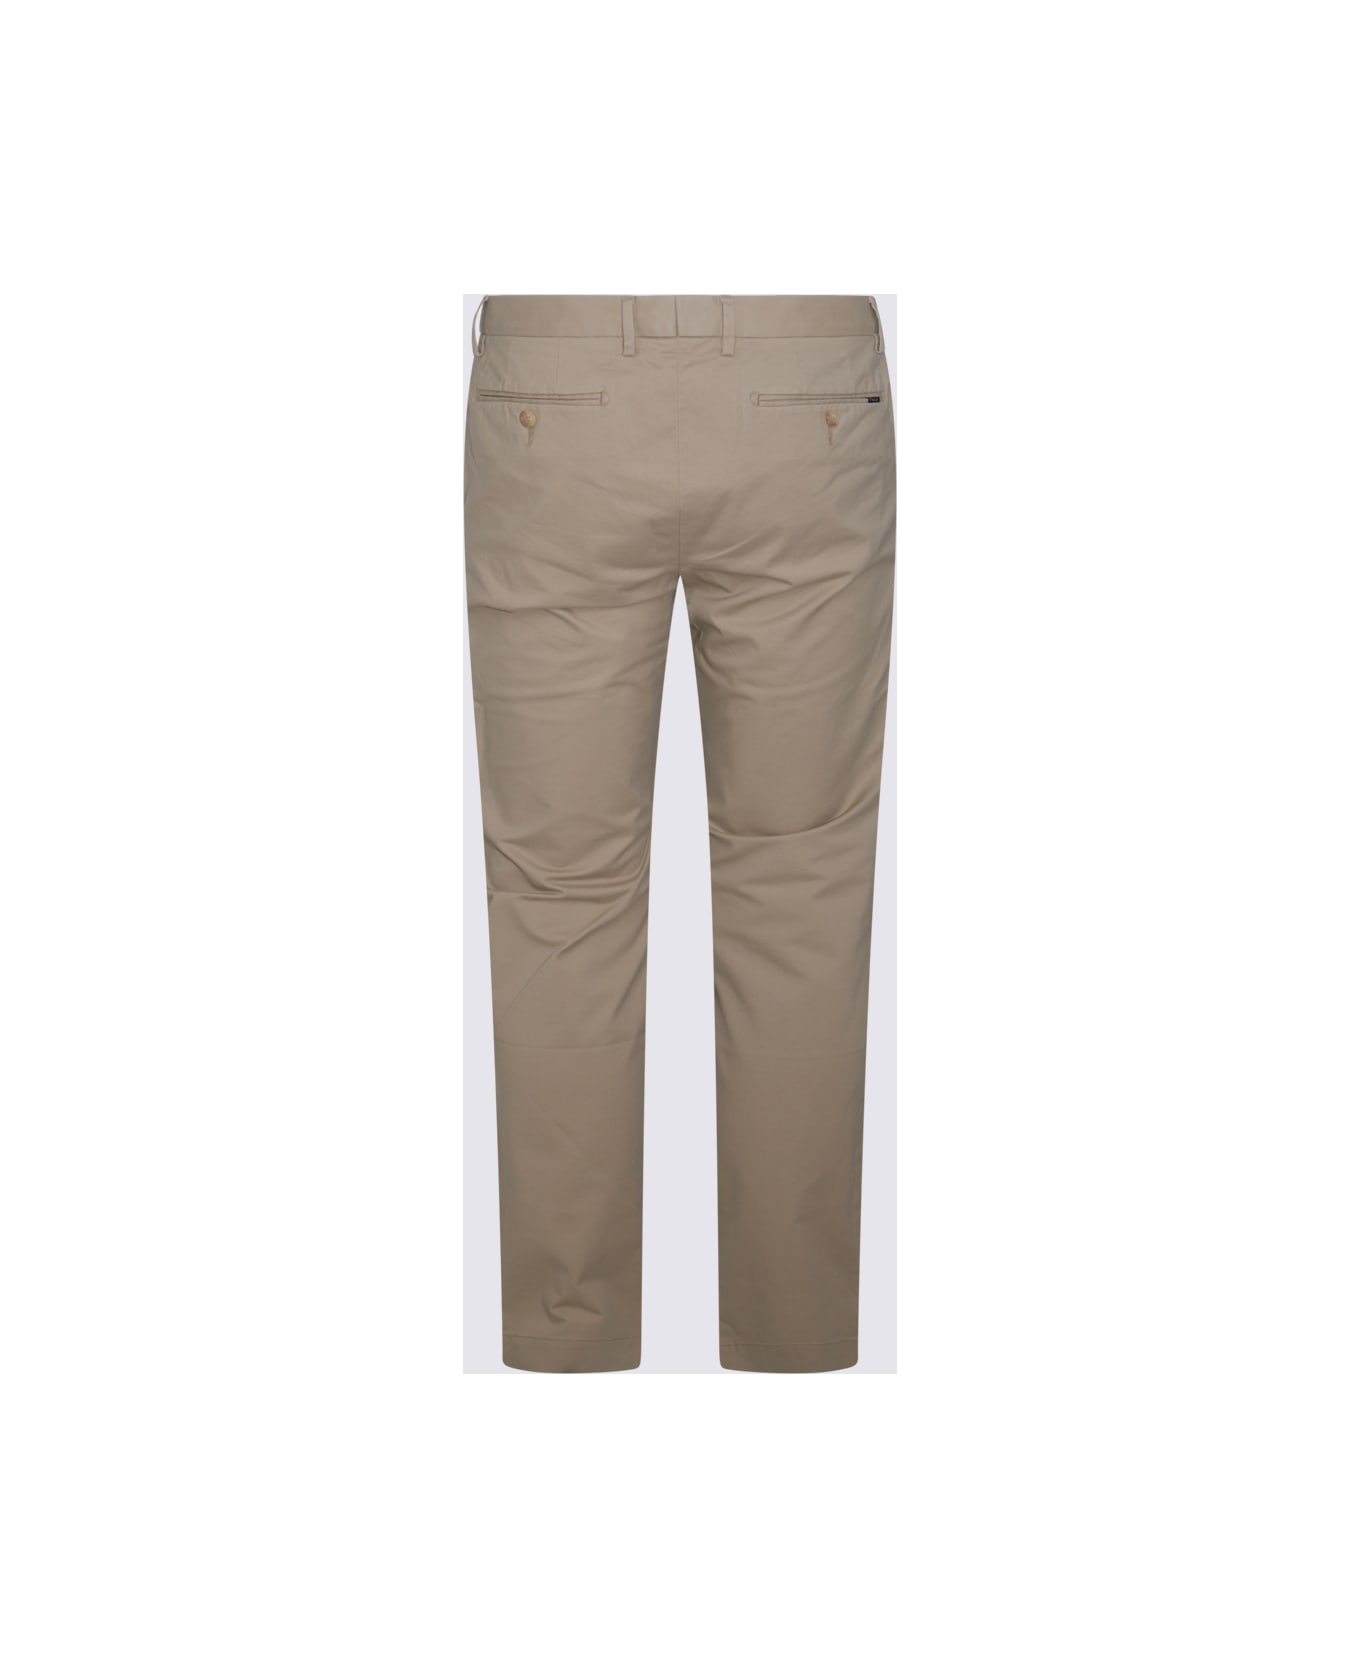 Polo Ralph Lauren Beige Cotton Pants - CLASSIC KHAKI